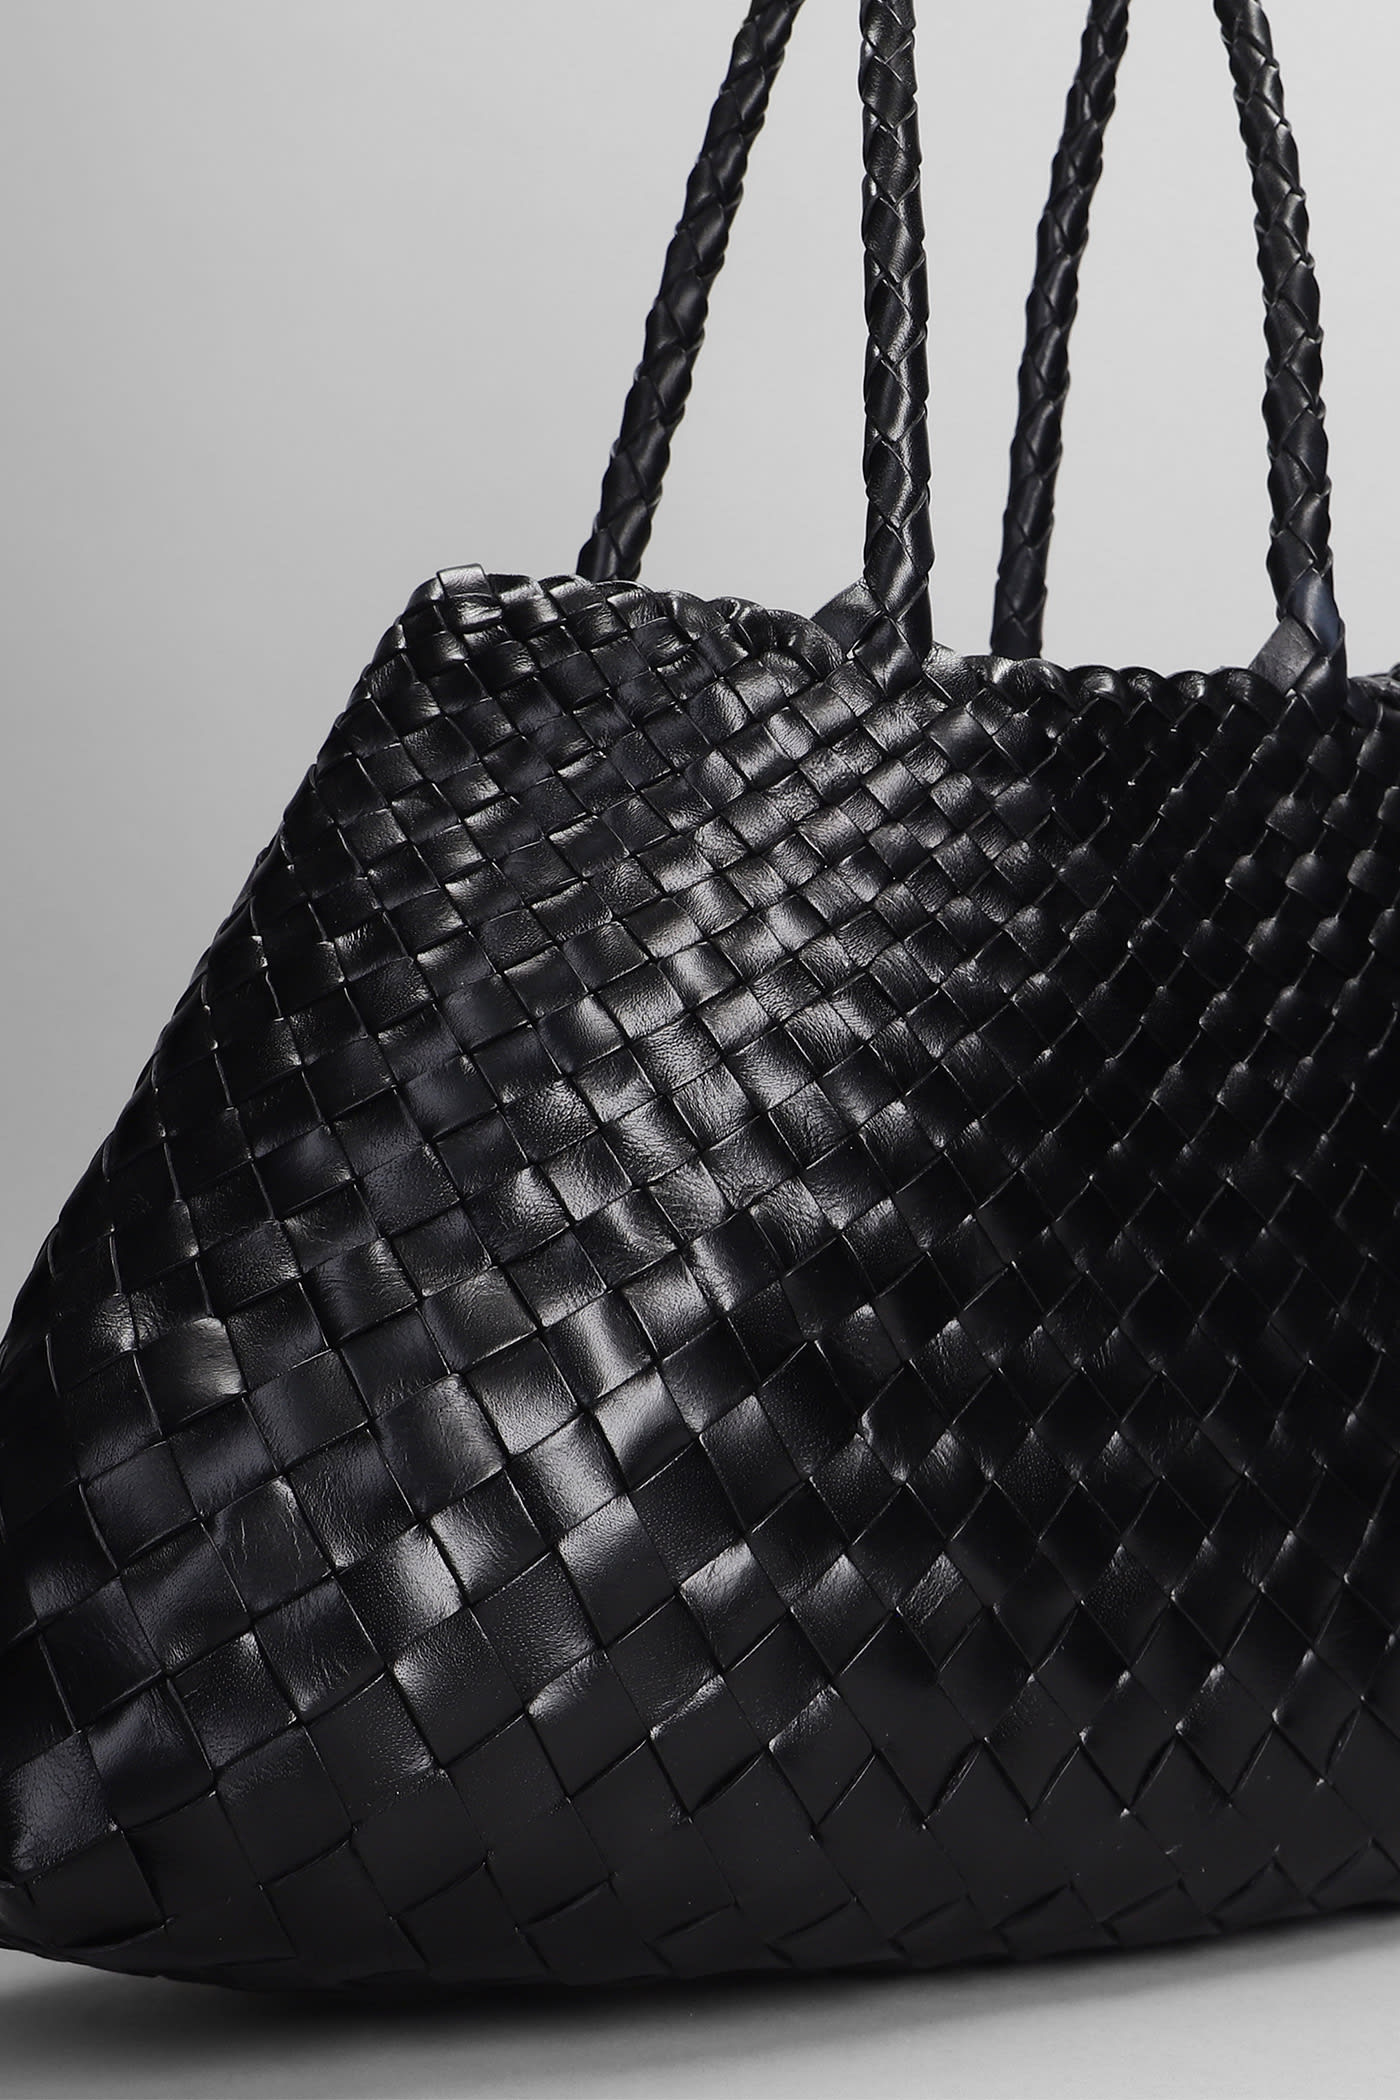 Shop Dragon Diffusion Santa Croce Big Tote In Black Leather